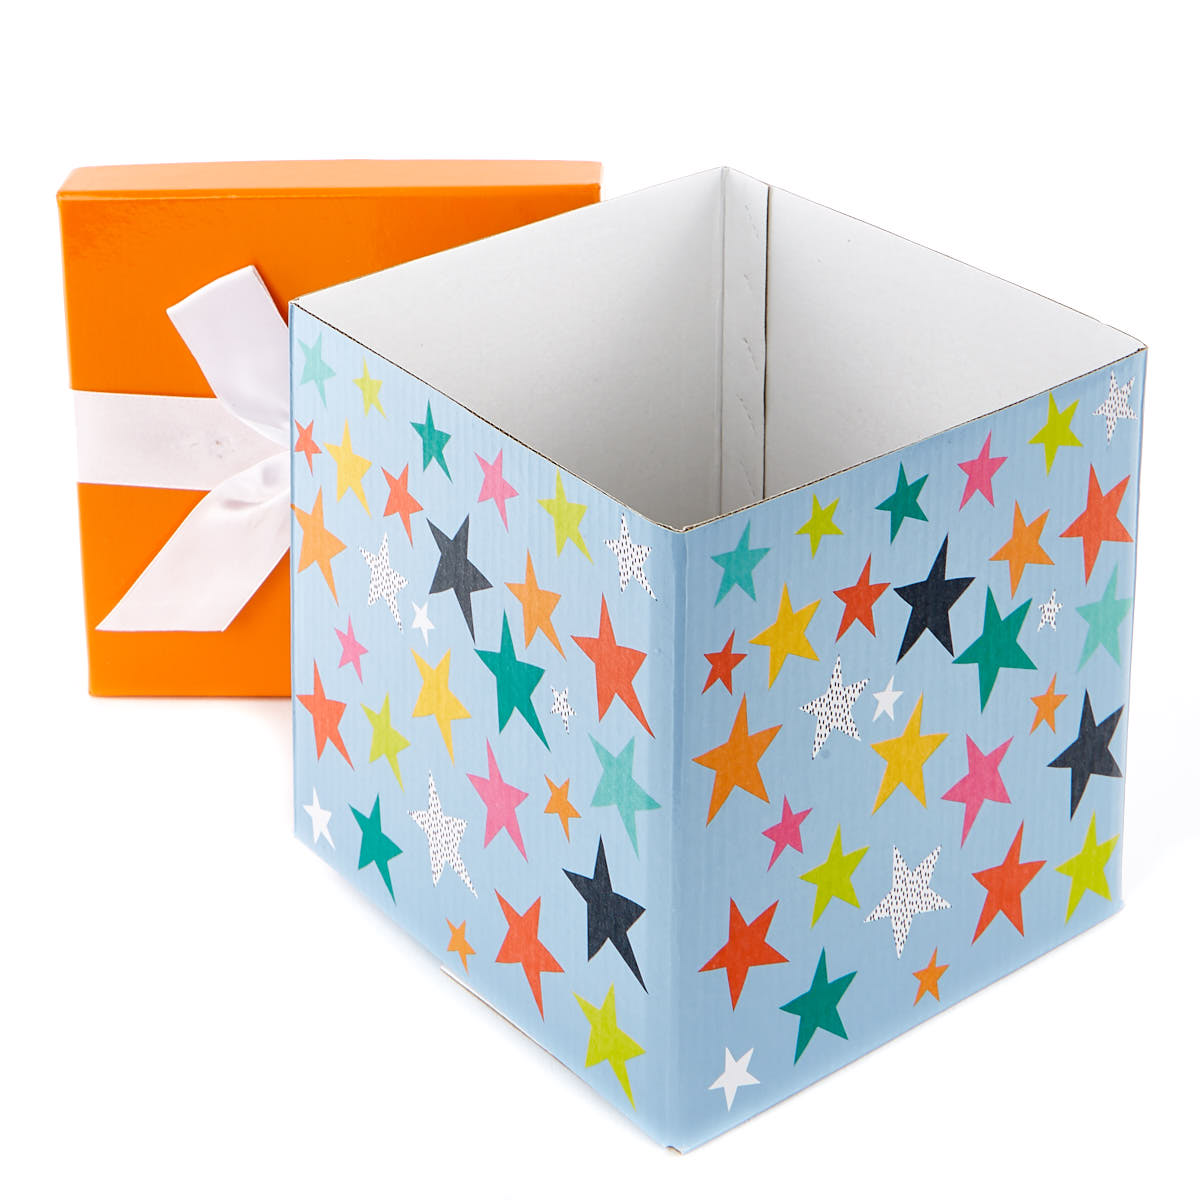 Buy Medium FlatPack Gift Box Orange & Blue Stars for